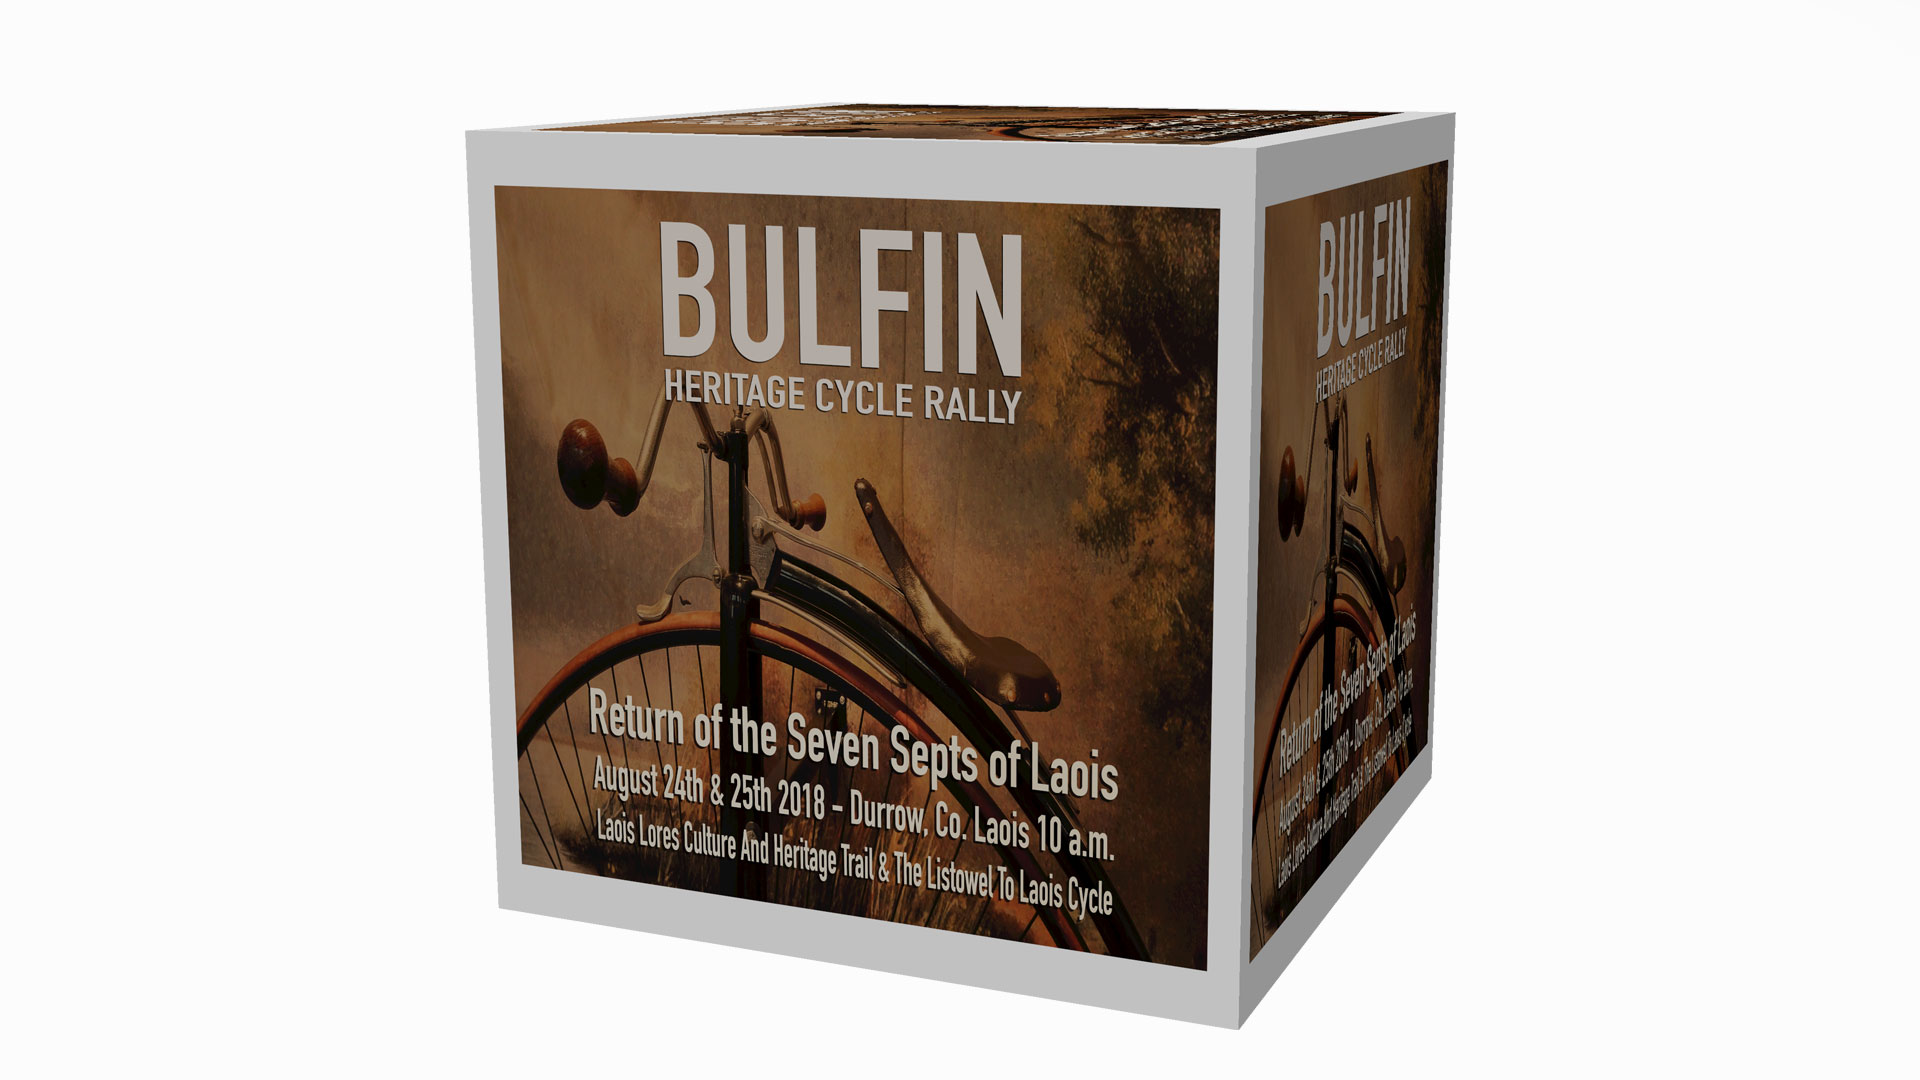 Bulfin Heritage Cycle Rally 2018 Poster